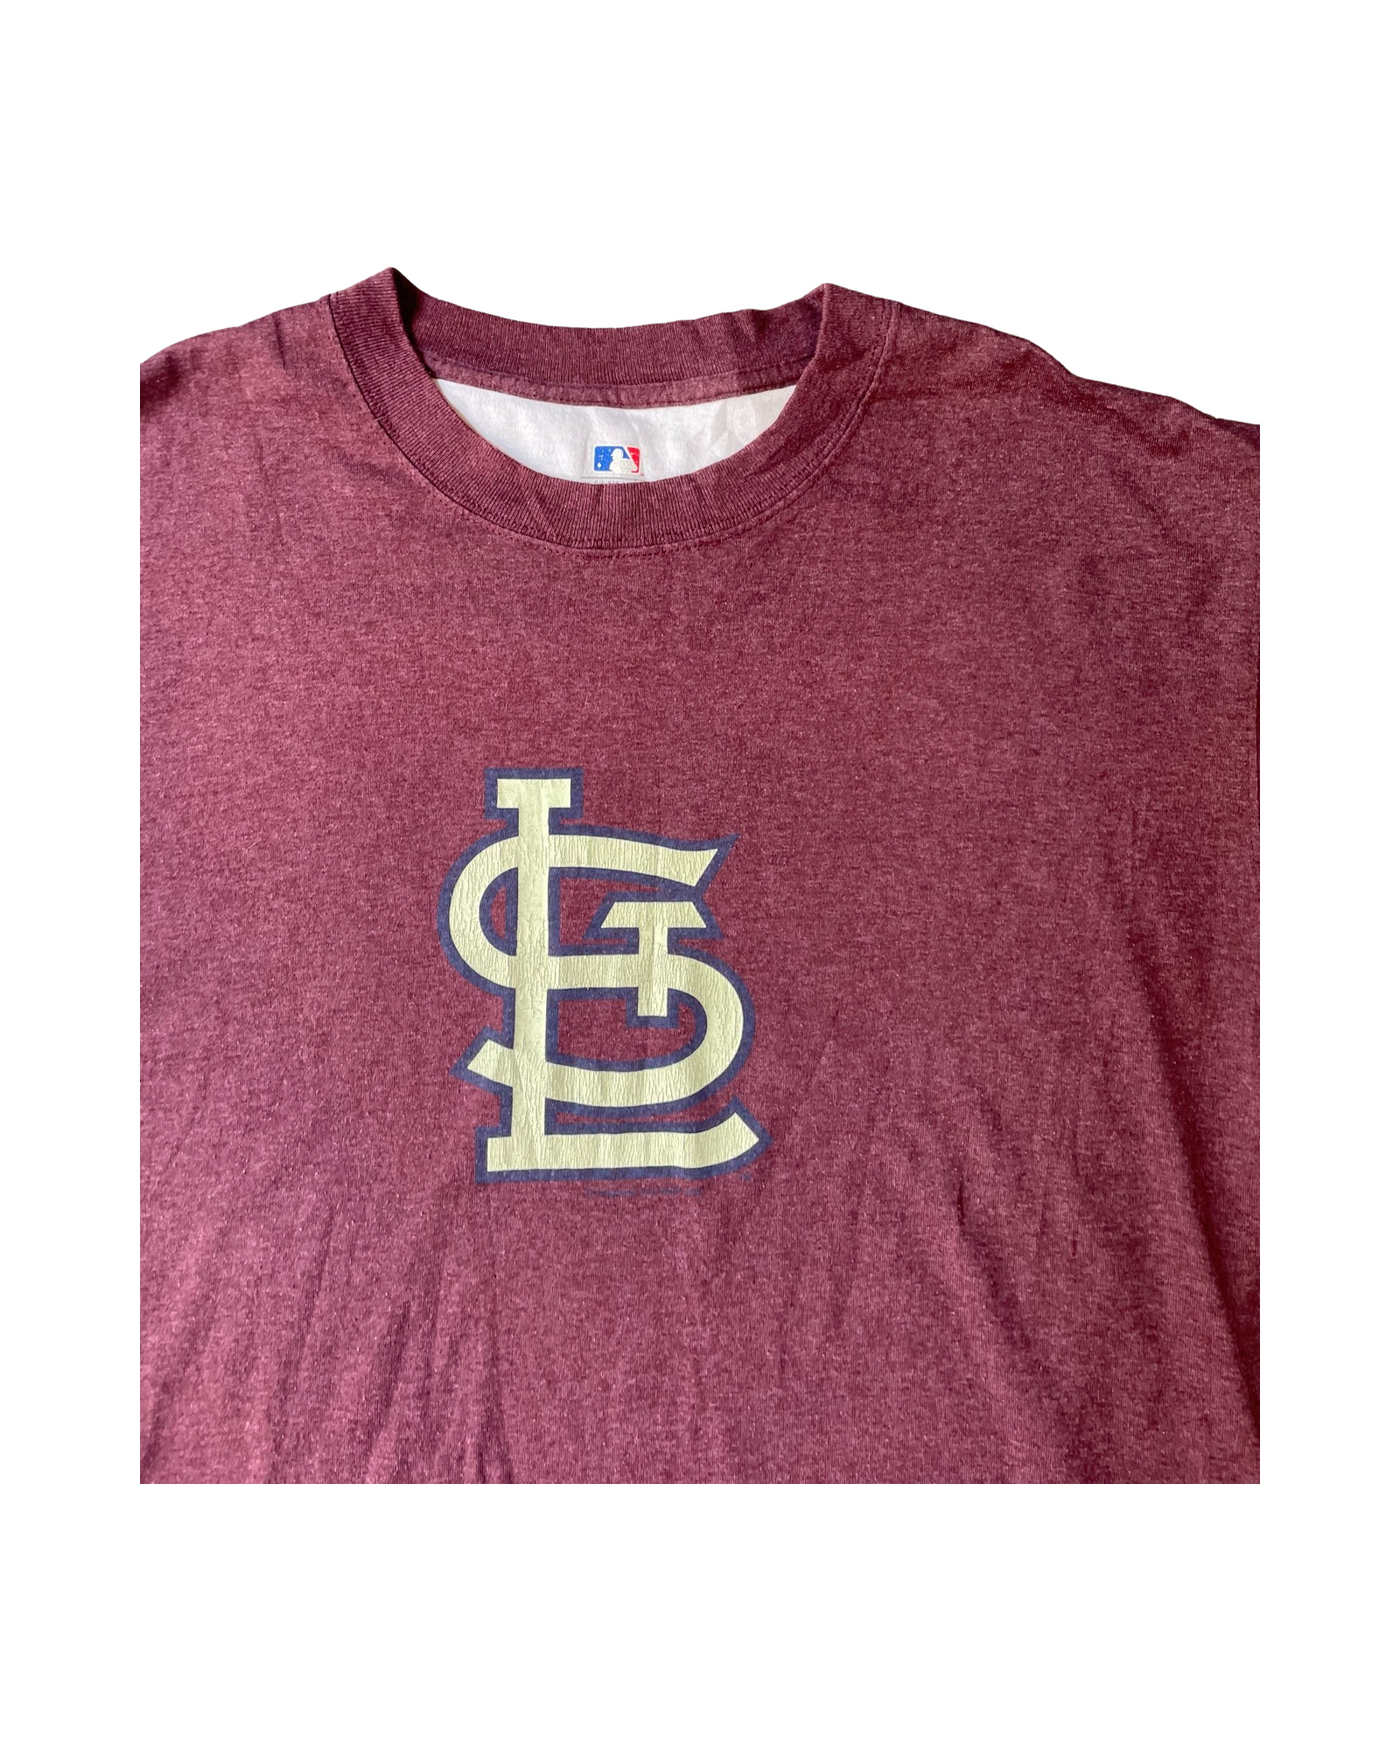 Vintage MBL St. Louis Cardinals T-Shirt